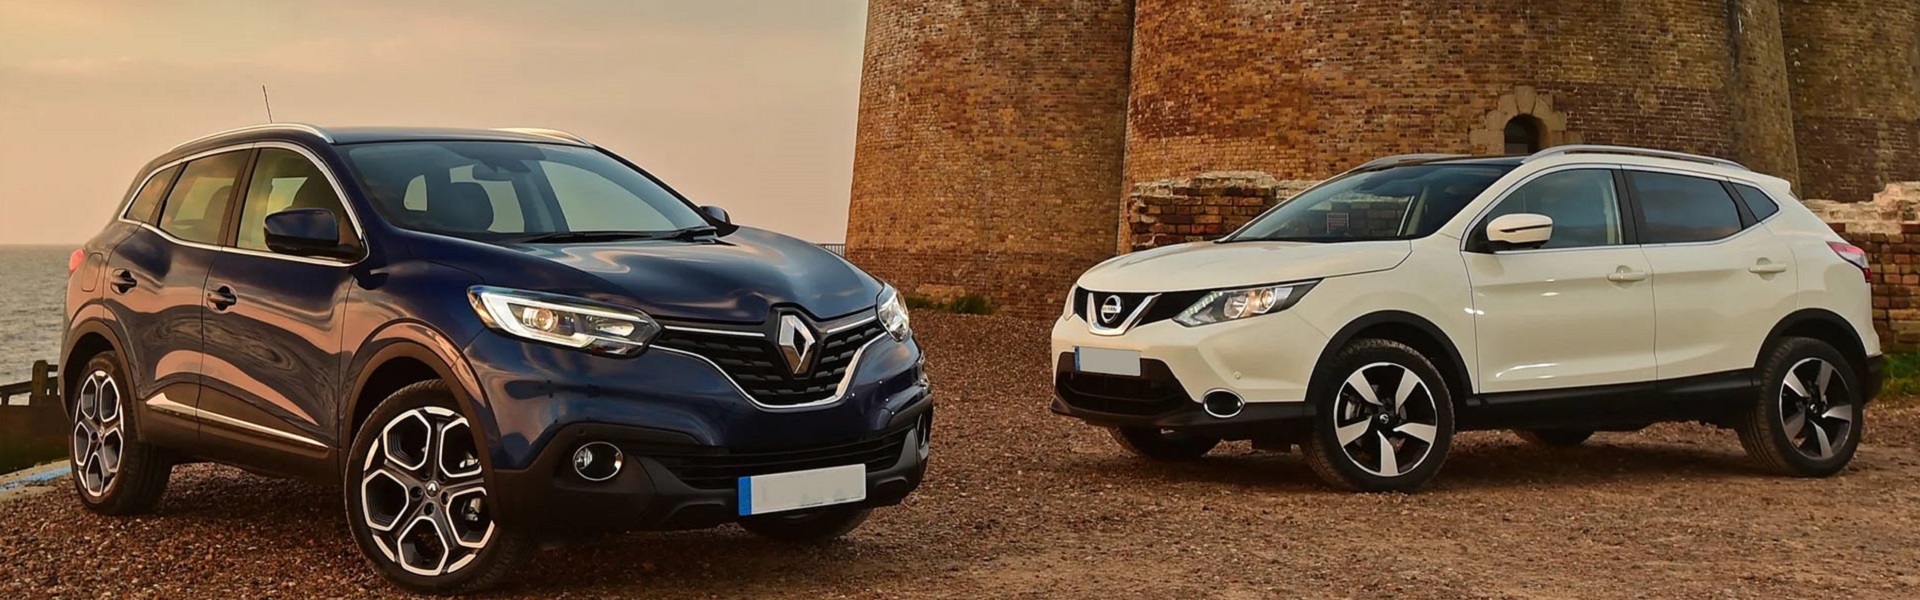 Kasko osiguranje | Prodaja Renault, Dacia i Nissan vozila